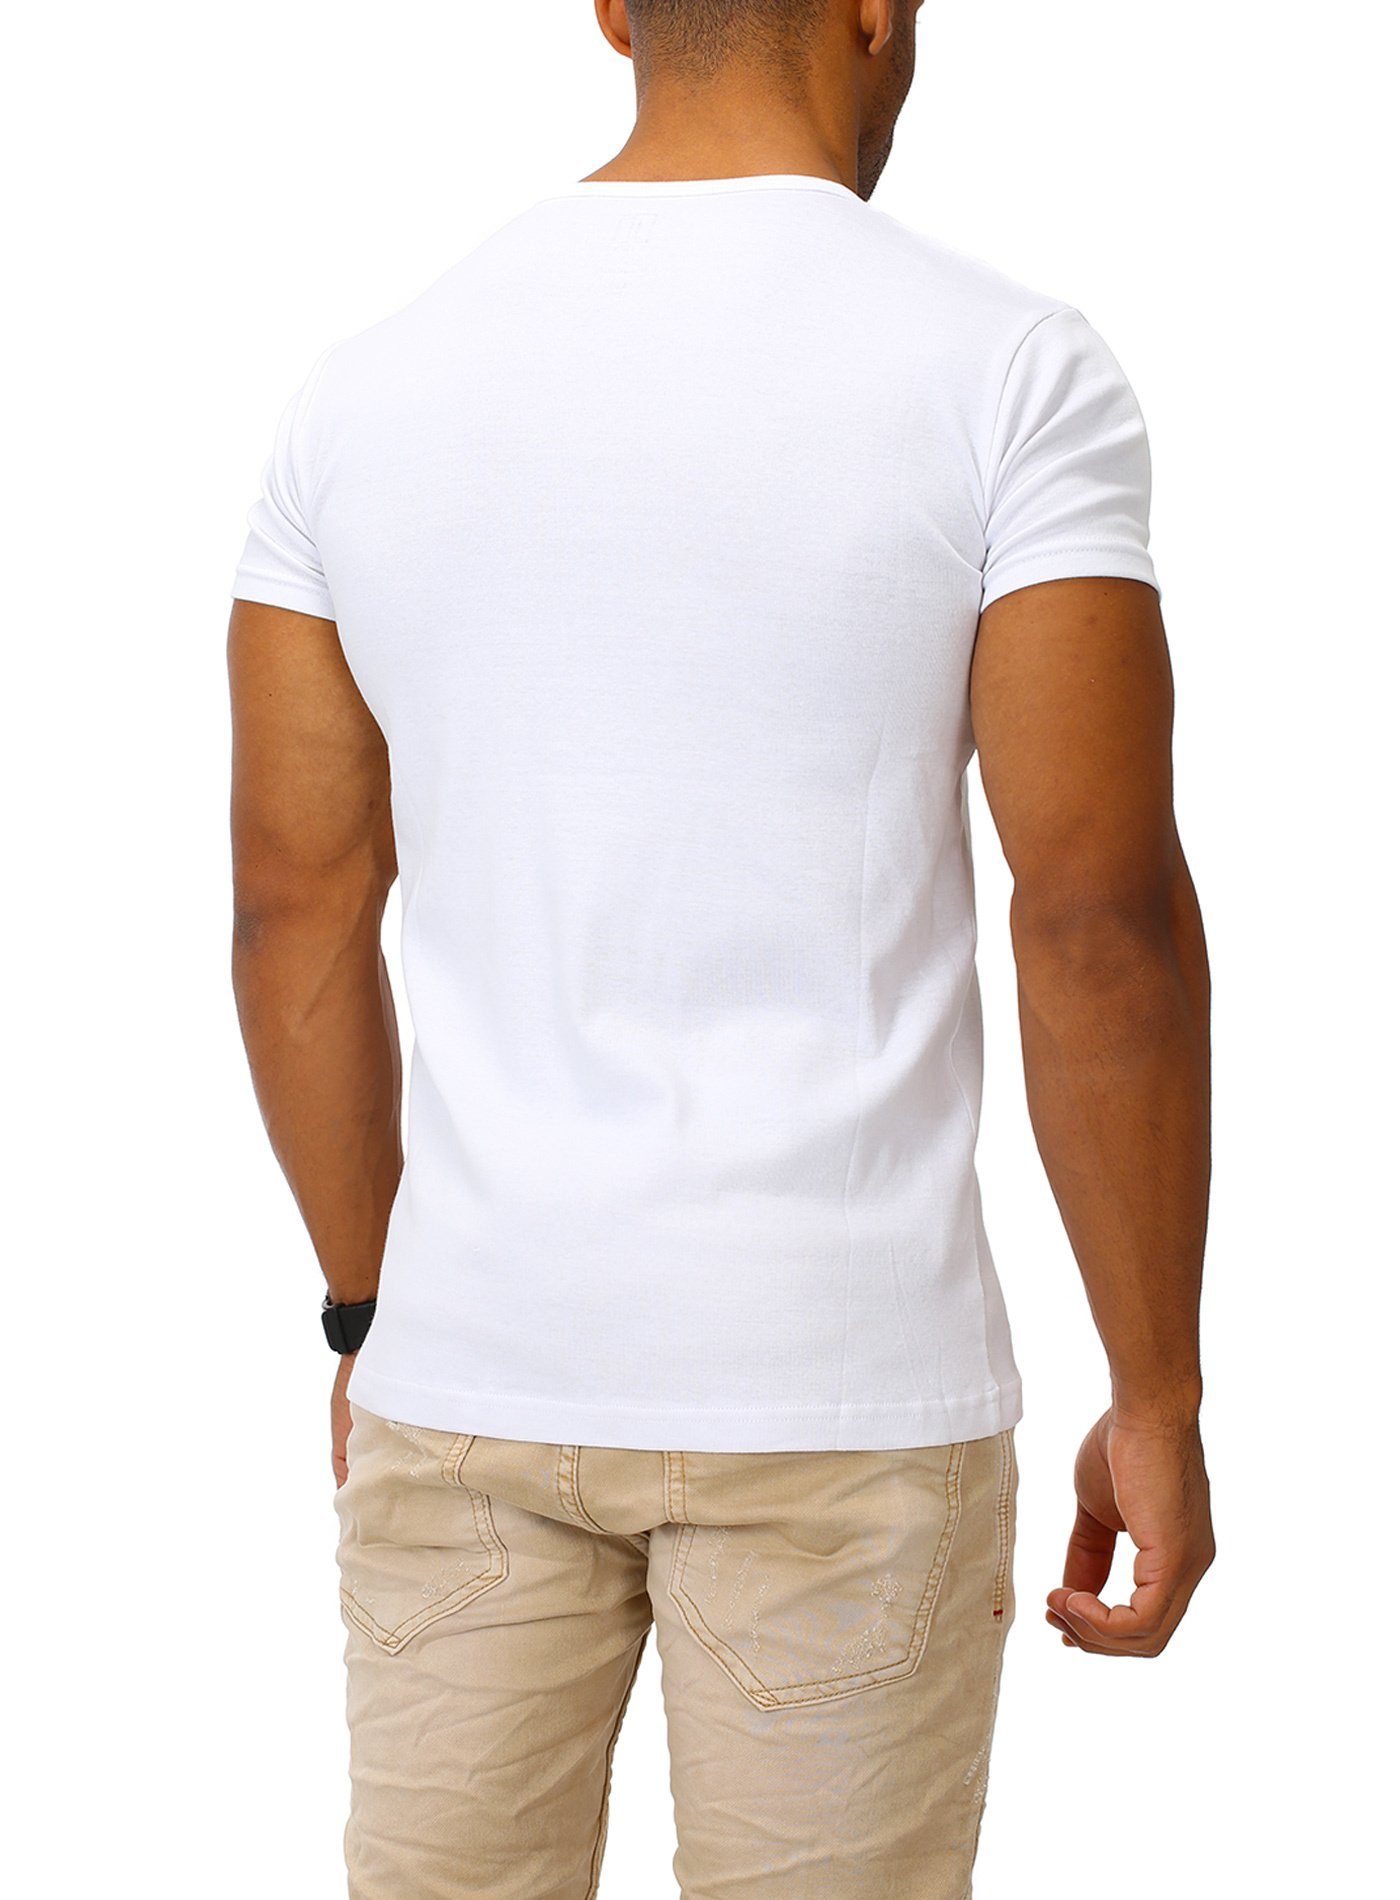 Joe Franks T-Shirt Big Slim white Button stylischem Fit in